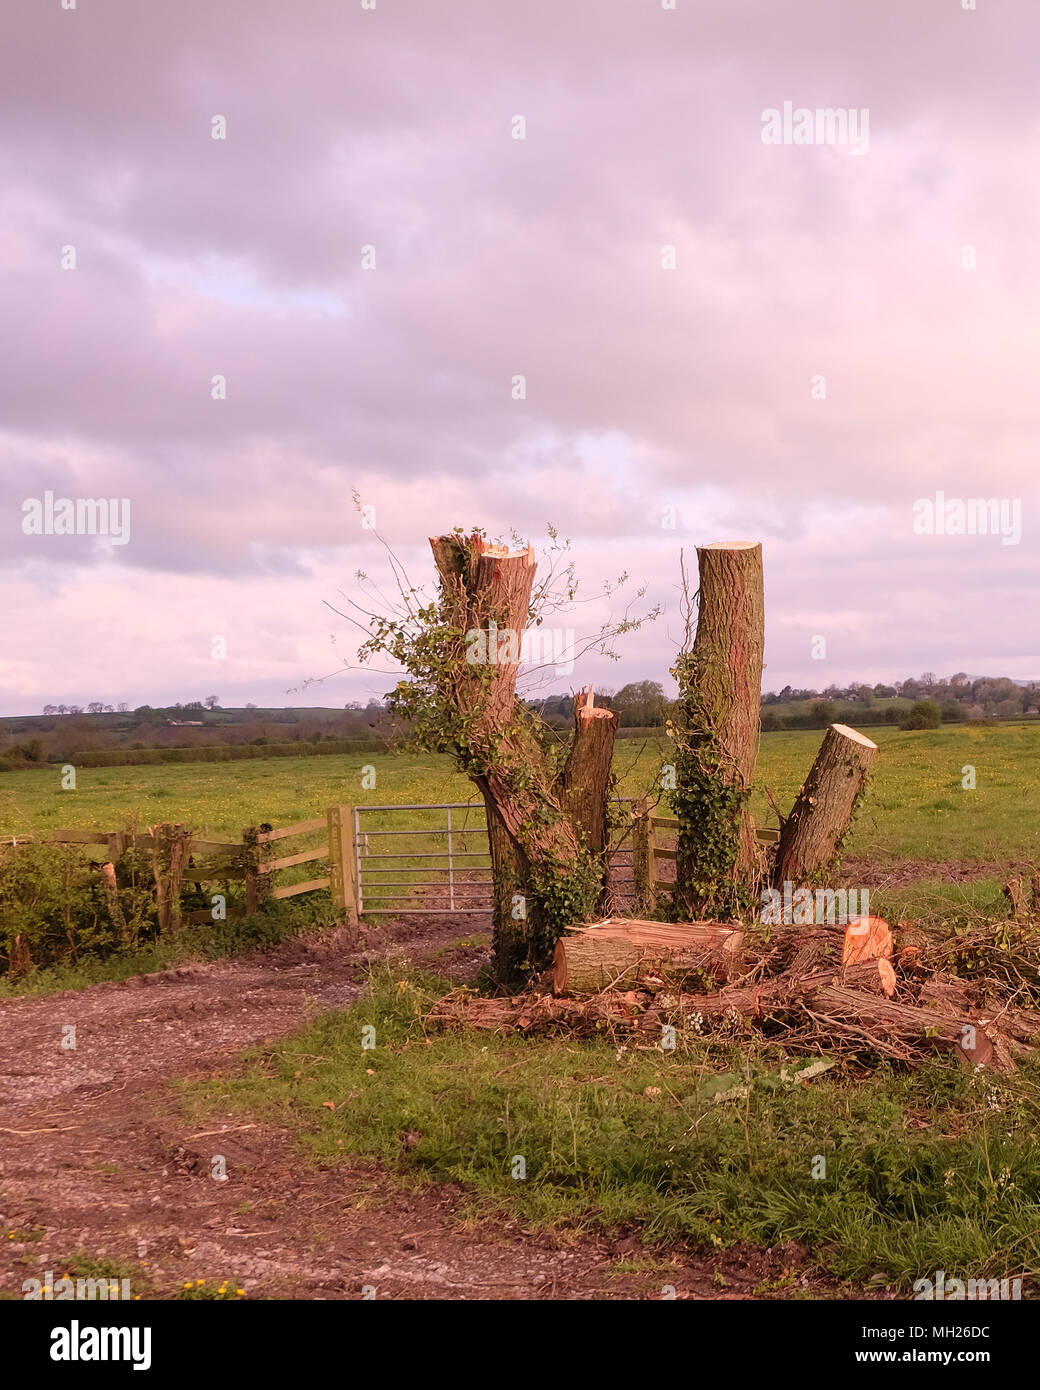 Aprile 2018 - spot di bellezza distrutta? Ceduo di alberi tagliati nelle zone rurali del Somerset vicino a Cheddar, con una perdita di habitat per la flora e la fauna. Foto Stock